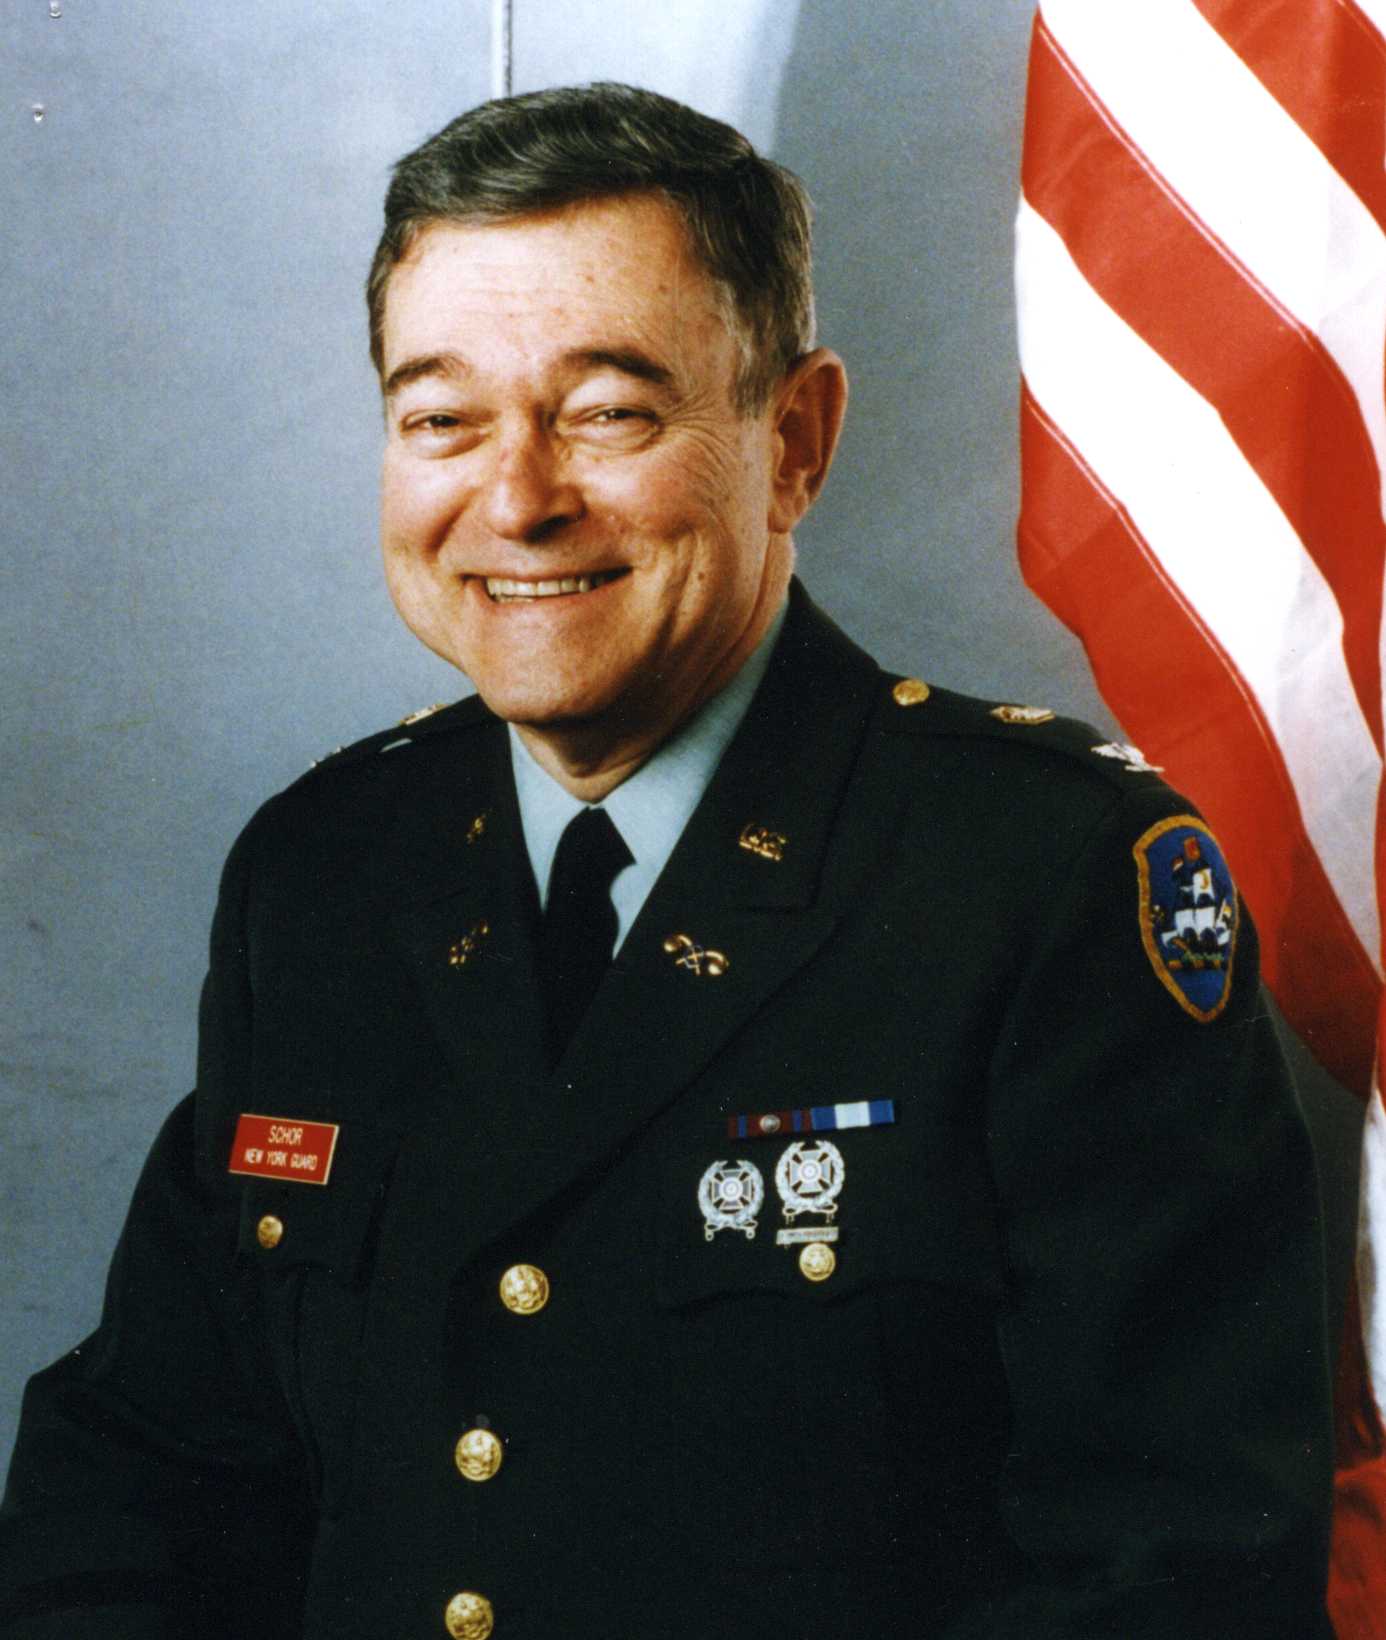 Colonel Joseph M. Schor